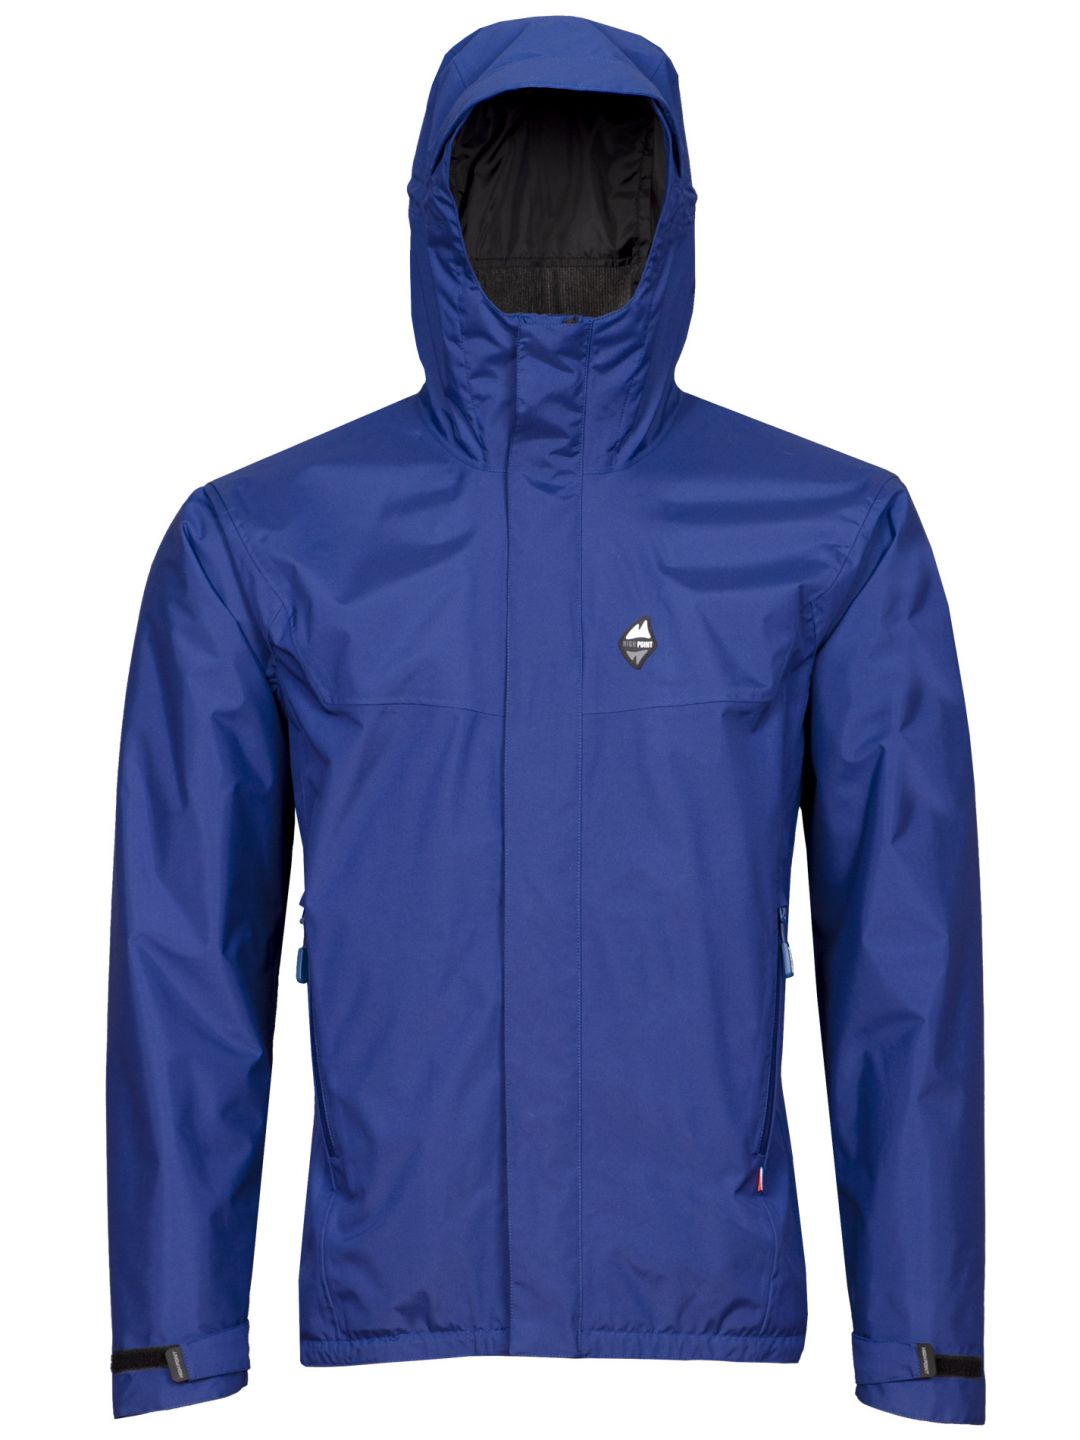 HIGH POINT MONTANUS jacket dark blue varianta: XL